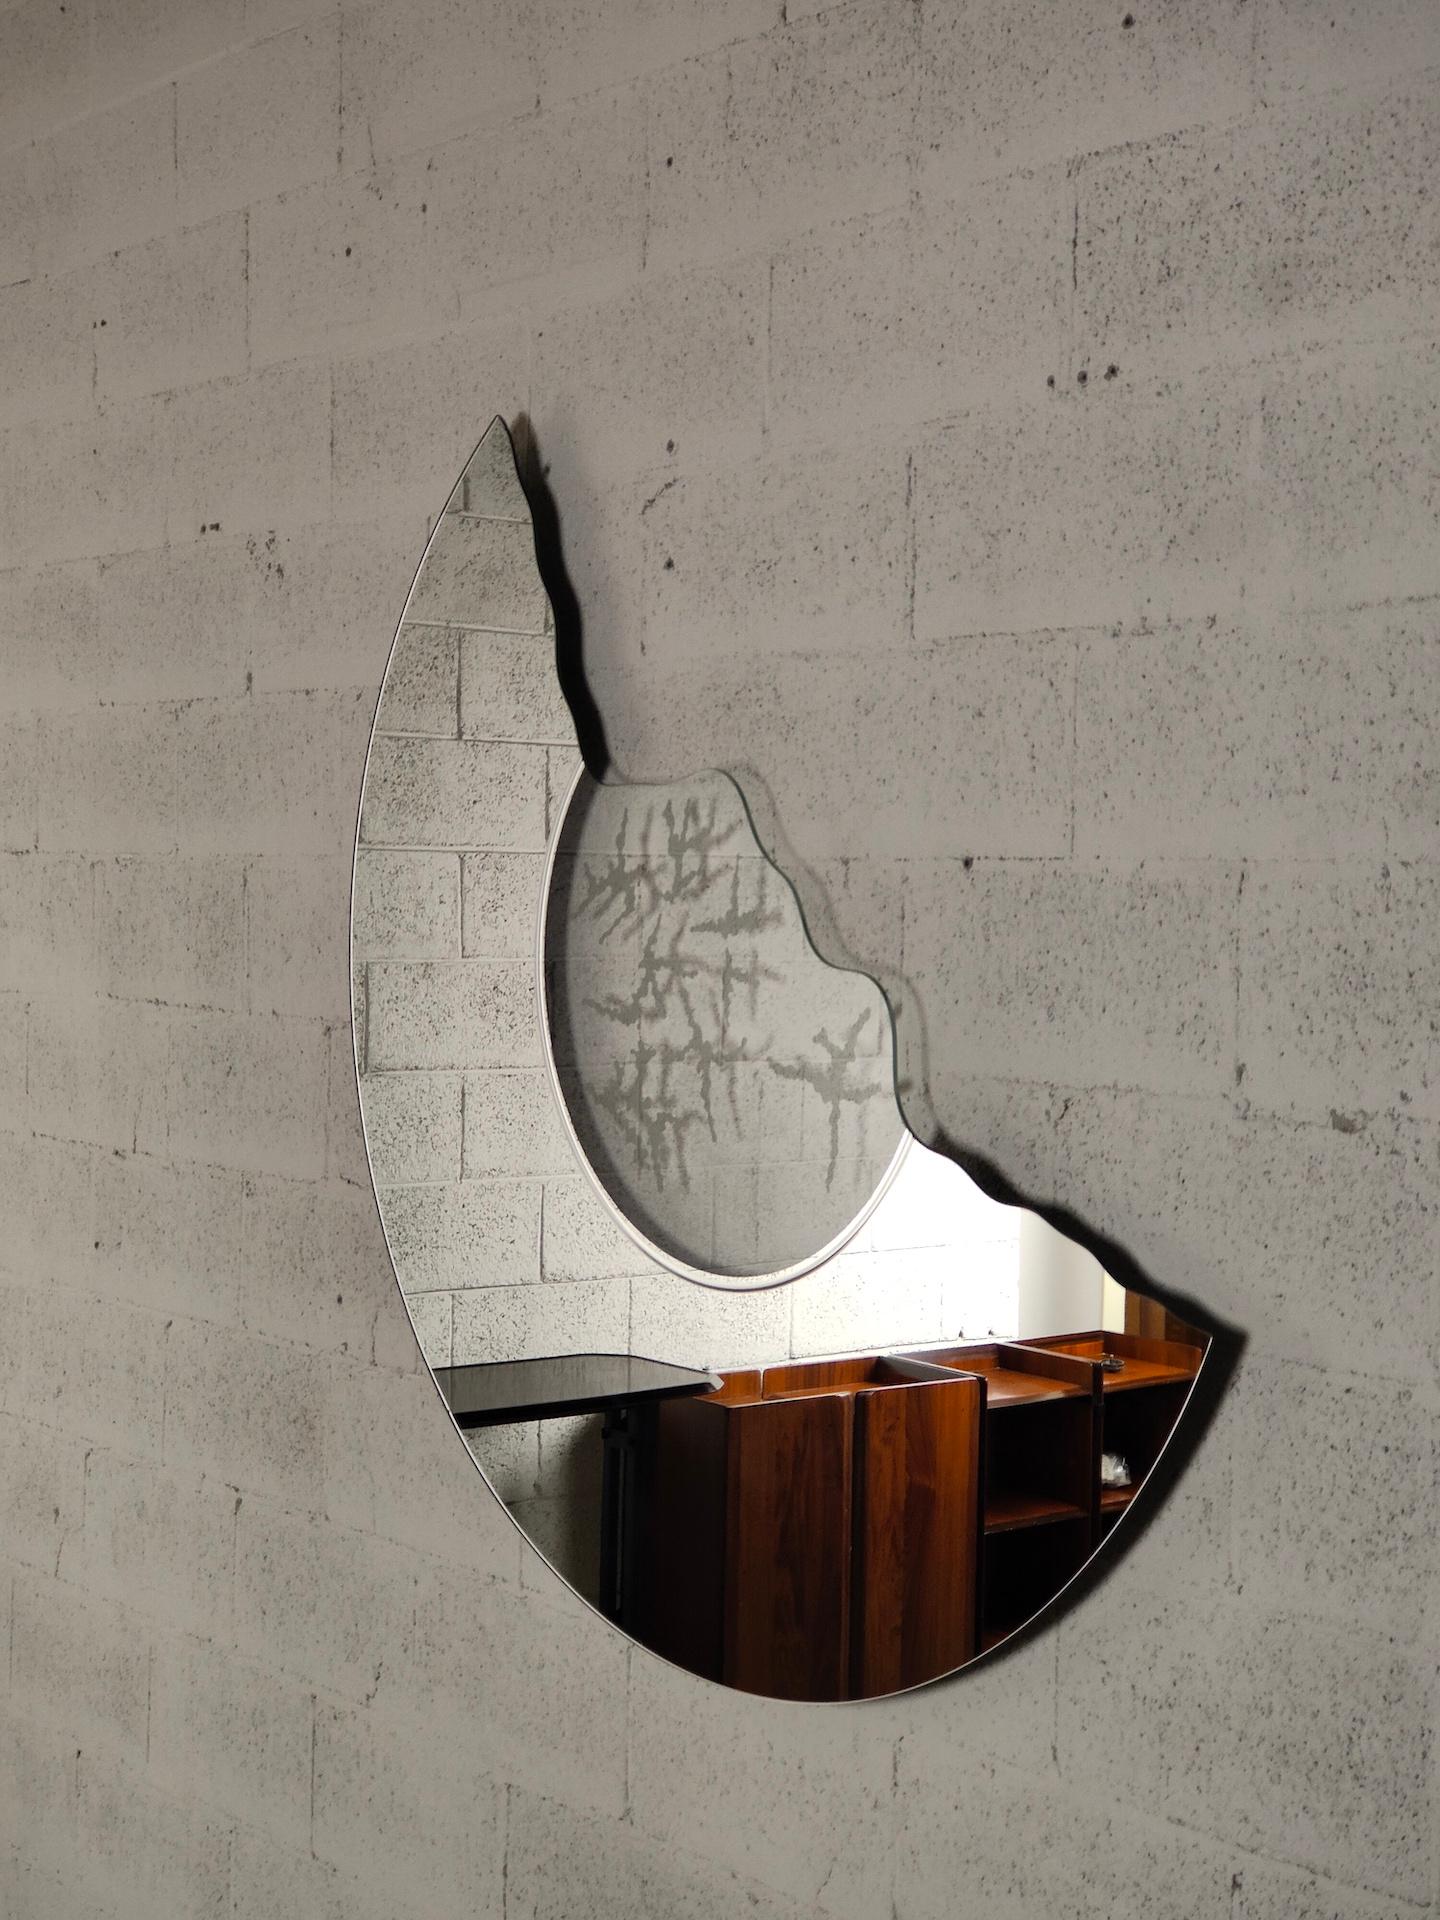 Le miroir Scornice conçu par Nanda Vigo pour Glas Italia est une série de miroirs avec des motifs de cadre et des décorations satinées sur la surface transparente qui répètent les reflets du verre.

Fernanda Enrica Leonia Vigo, connue sous le nom